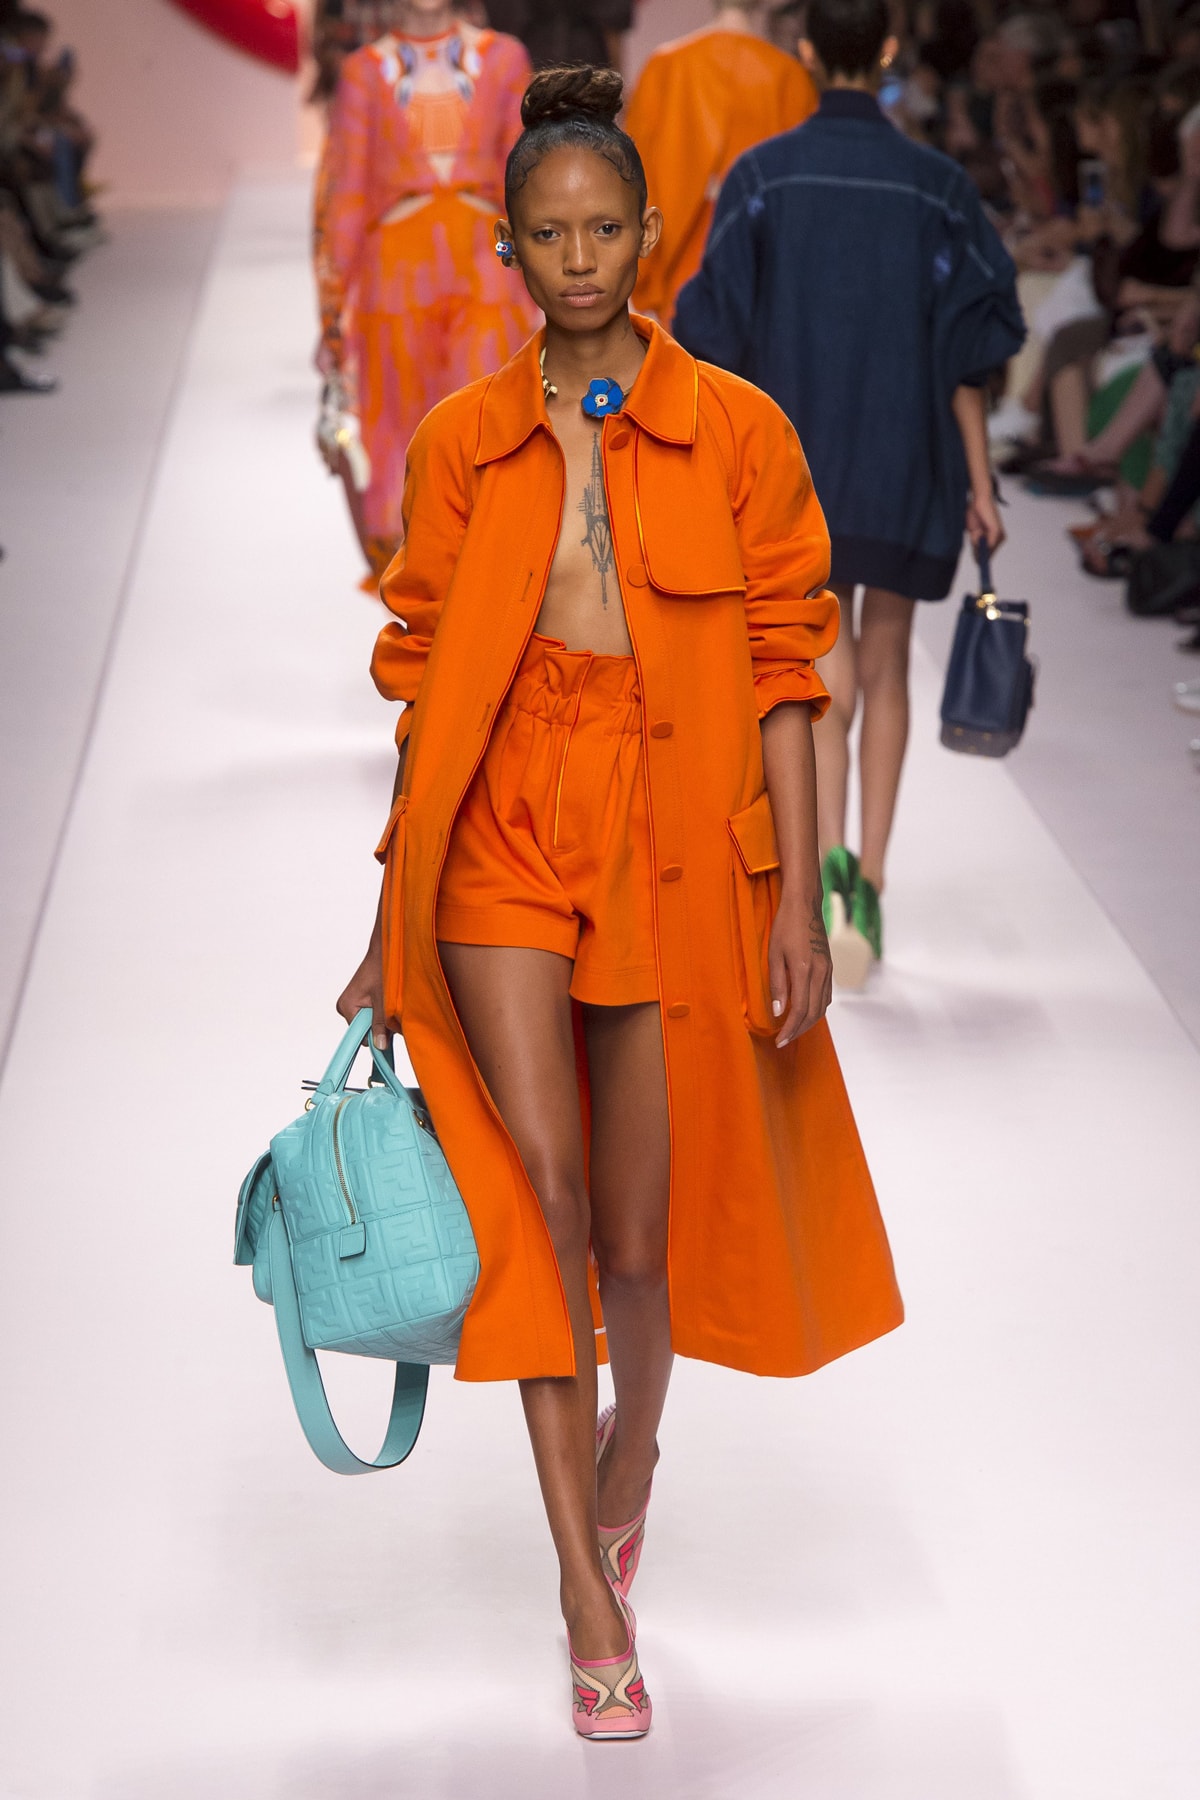 Fendi Karl Lagerfeld Spring Summer 2019 Milan Fashion Week Show Collection Jacket Shorts Orange Handbag Blue